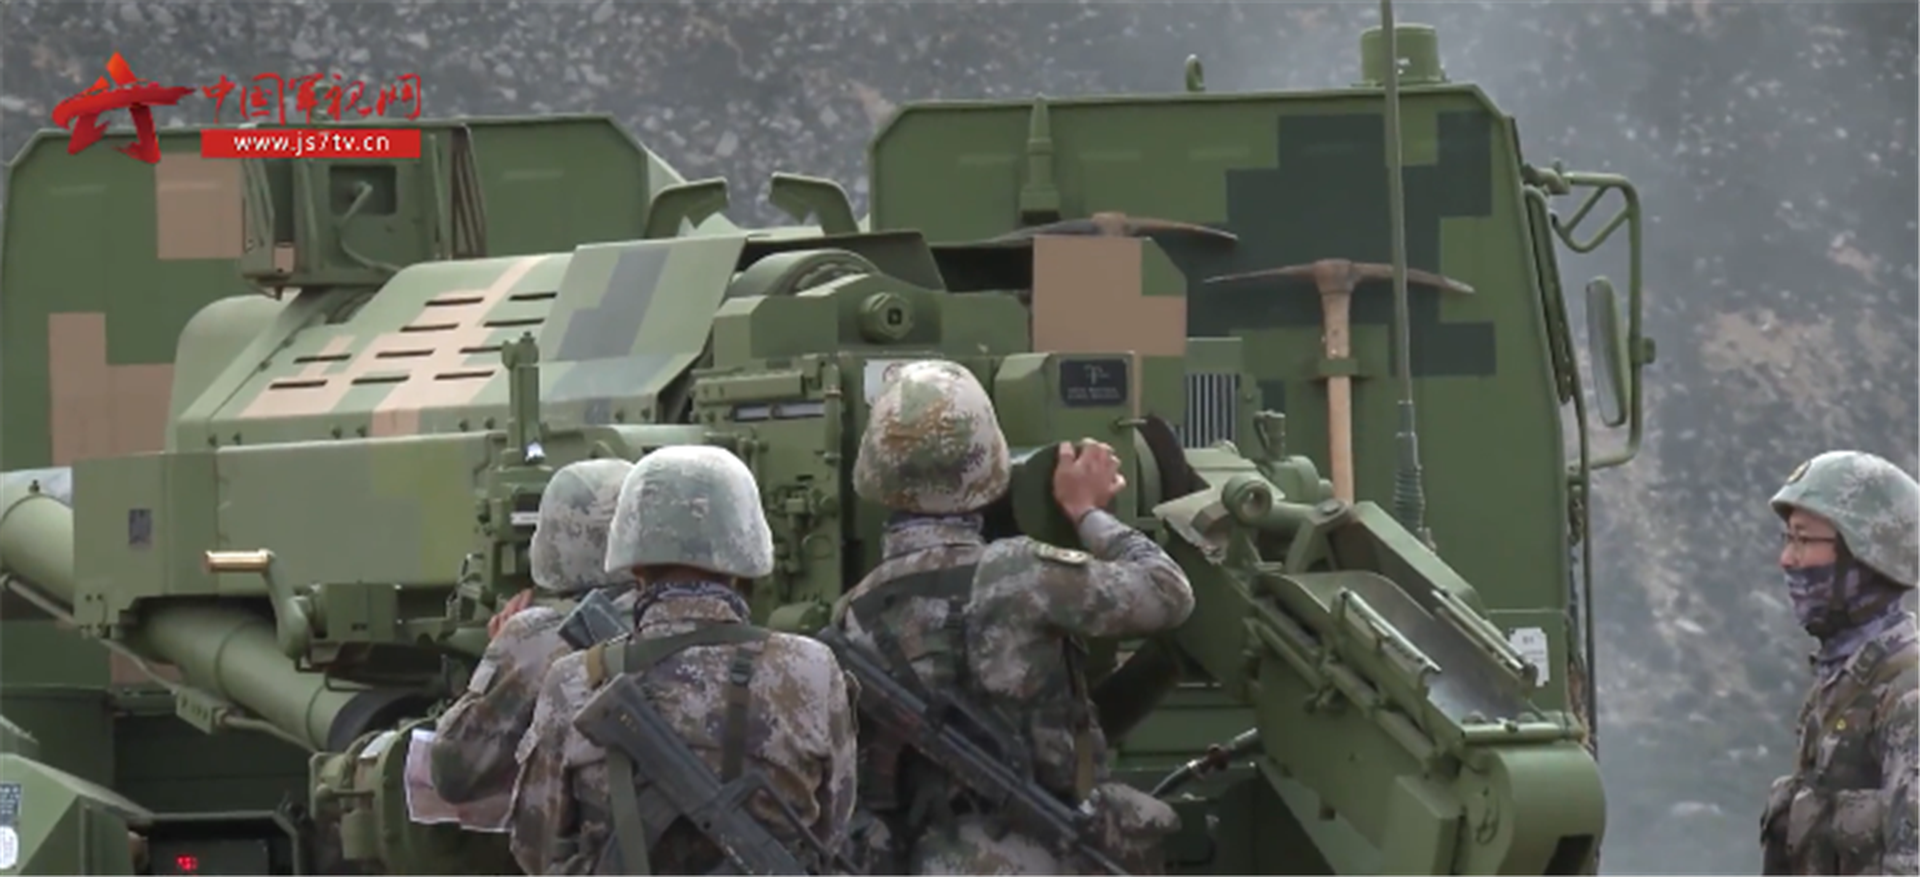 第75集团军某炮兵旅开展实弹射击演练，检验新型轮式火炮高原火力打击能力和极限战斗性能。（中国军事网截图）